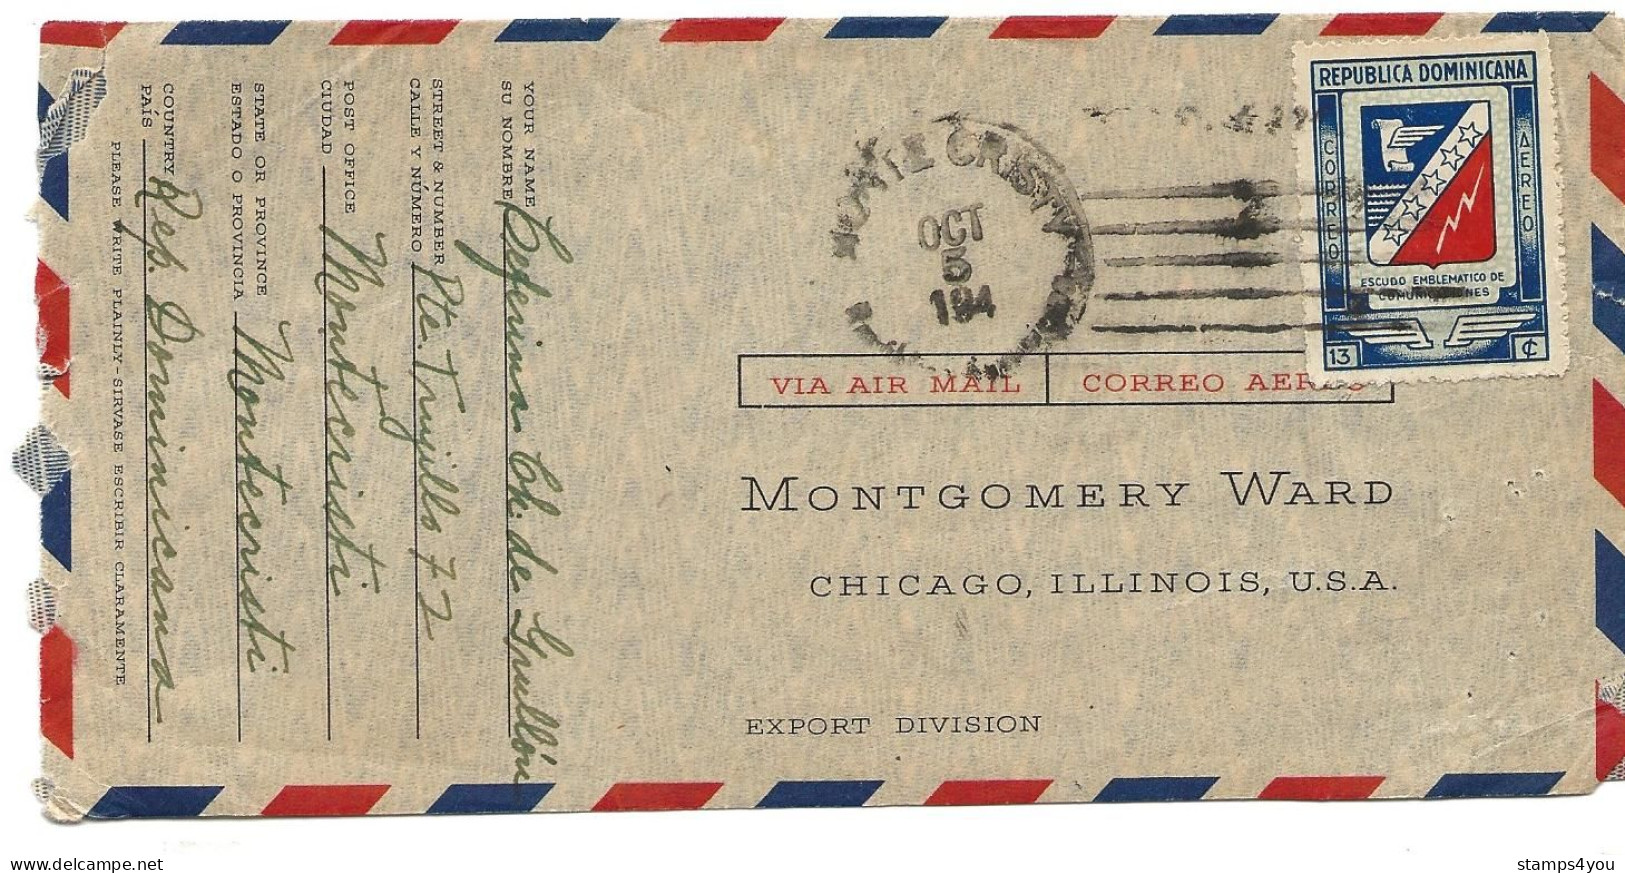 237 - 79 - Enveloppe Envoyée De Montecristi à Chicago - Cachet Avec Année Incomplète - Dominicaine (République)